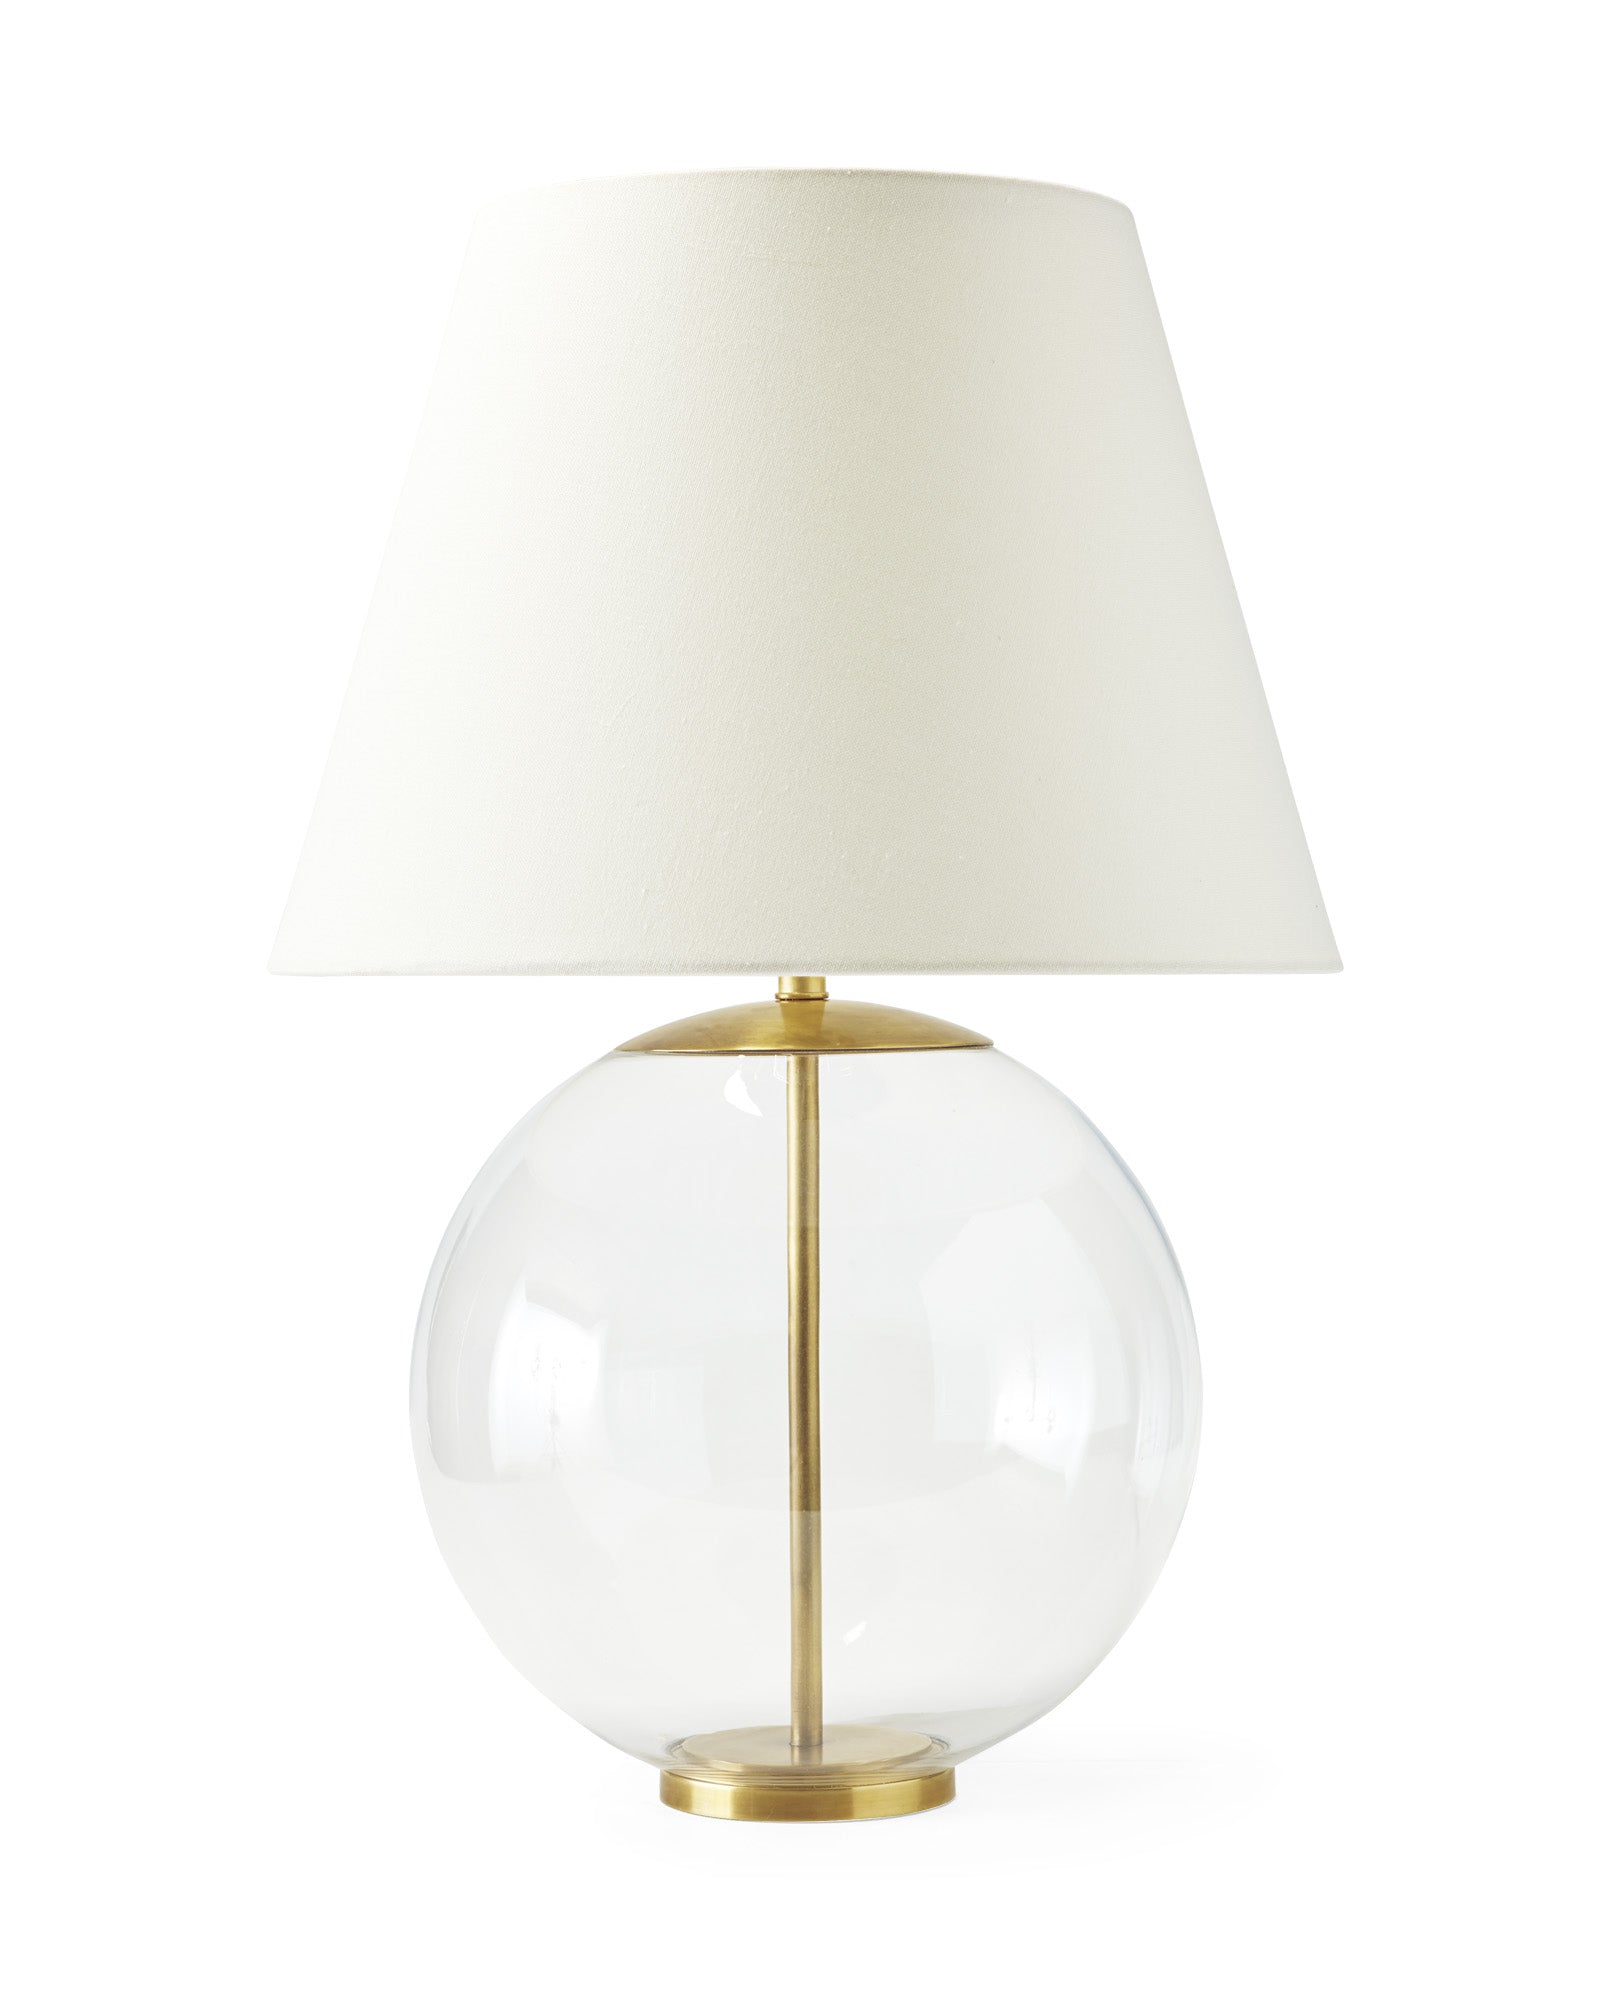 Золотая настольная лампа "Клейтон" в форме стеклянного шара на стальной подставке.